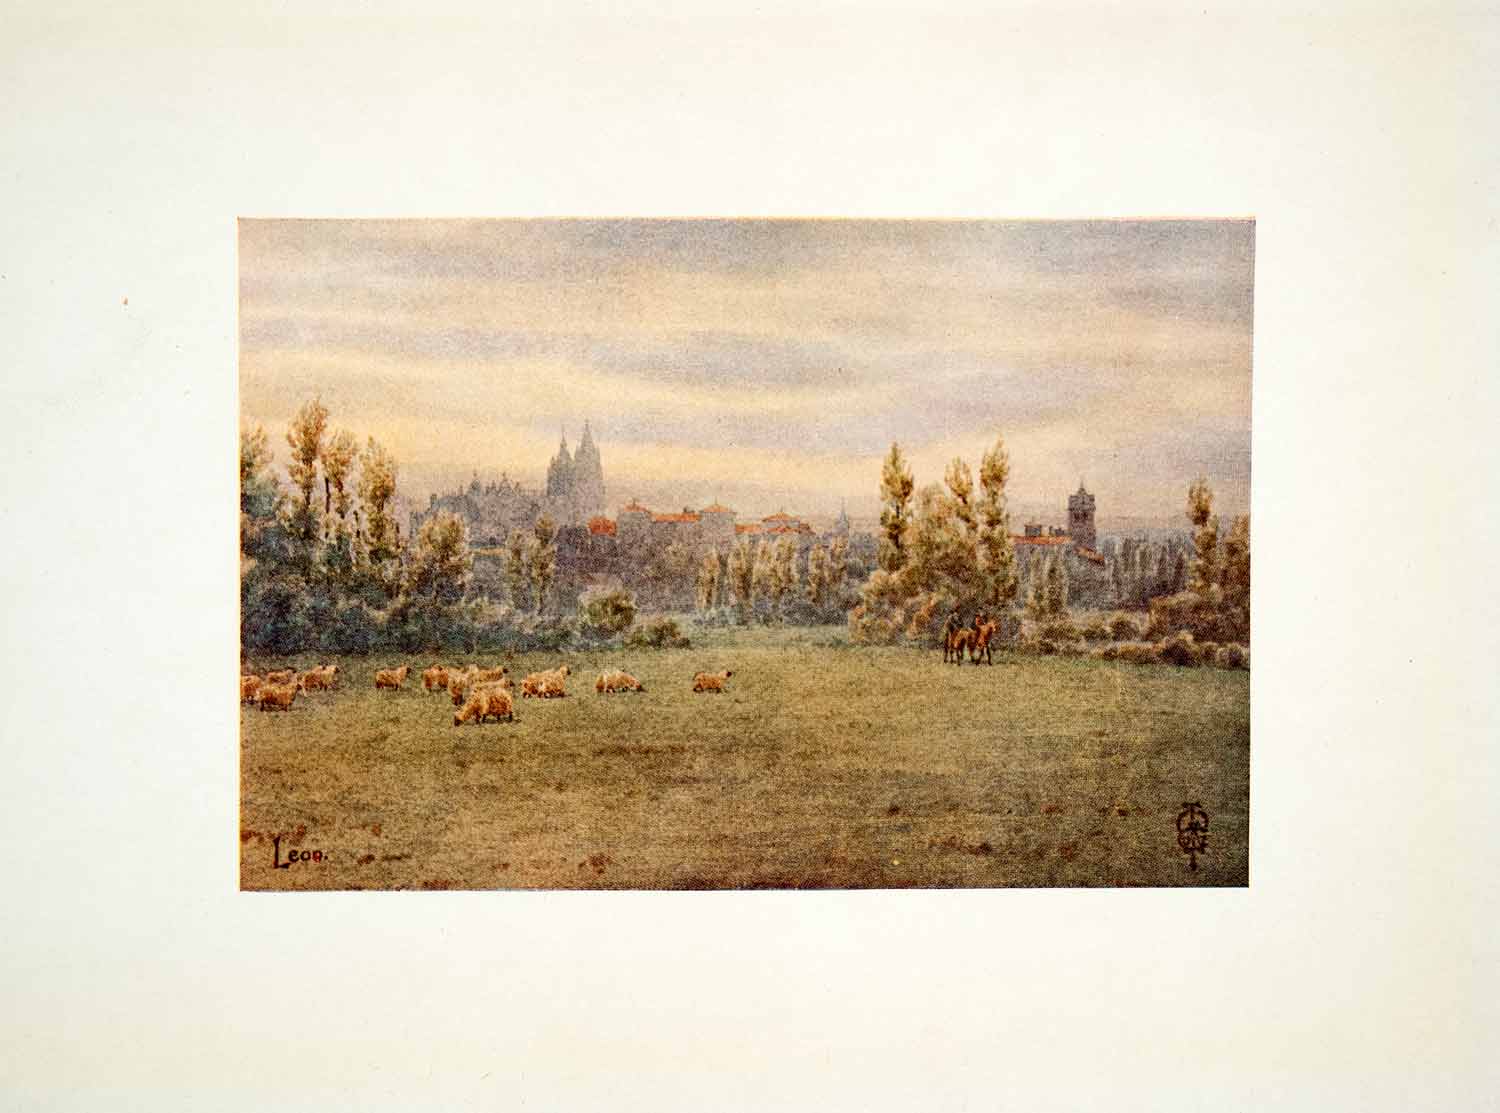 1906 Color Print Leon Spain Cityscape Sheep Herd Shepherd Landscape Field XGJB3